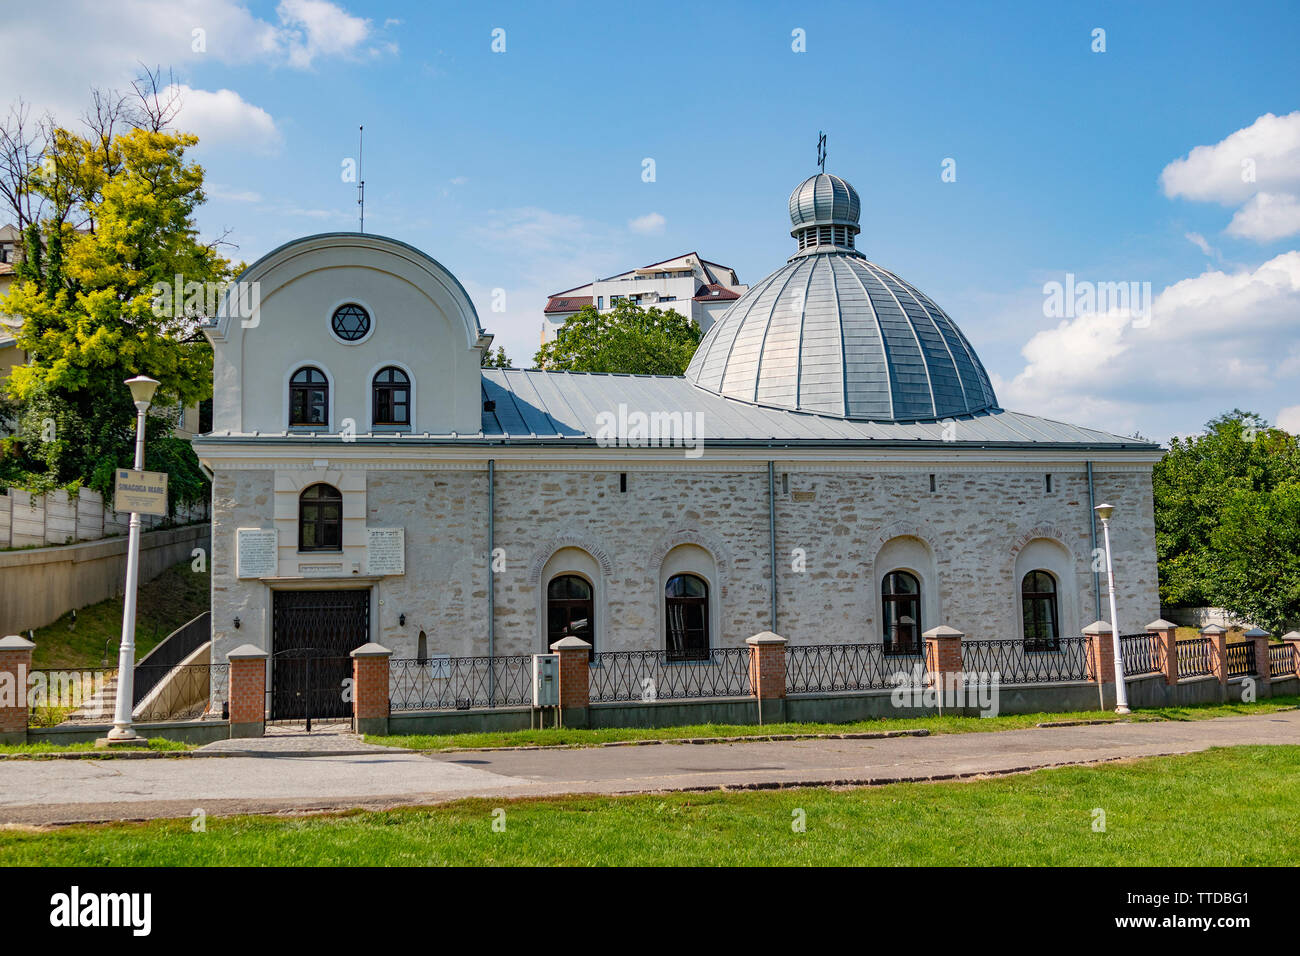 Iasi, Roumanie - août 6th, 2018 : La grande synagogue de la ville de Iasi, Roumanie, lors d'une journée ensoleillée Banque D'Images